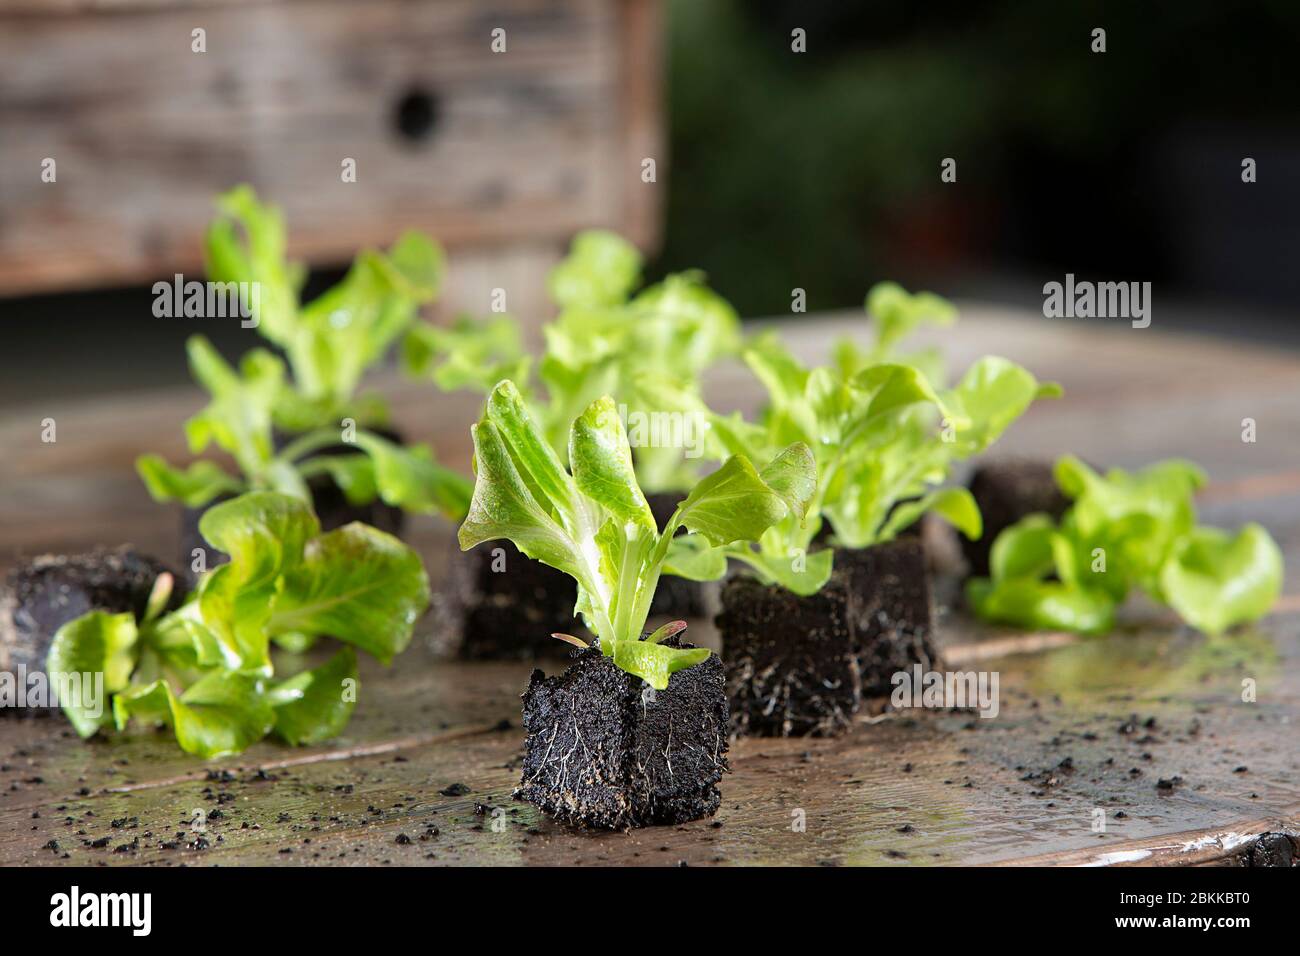 Gros plan de jeune plante à salade, plante à laitue dans le jardin Banque D'Images